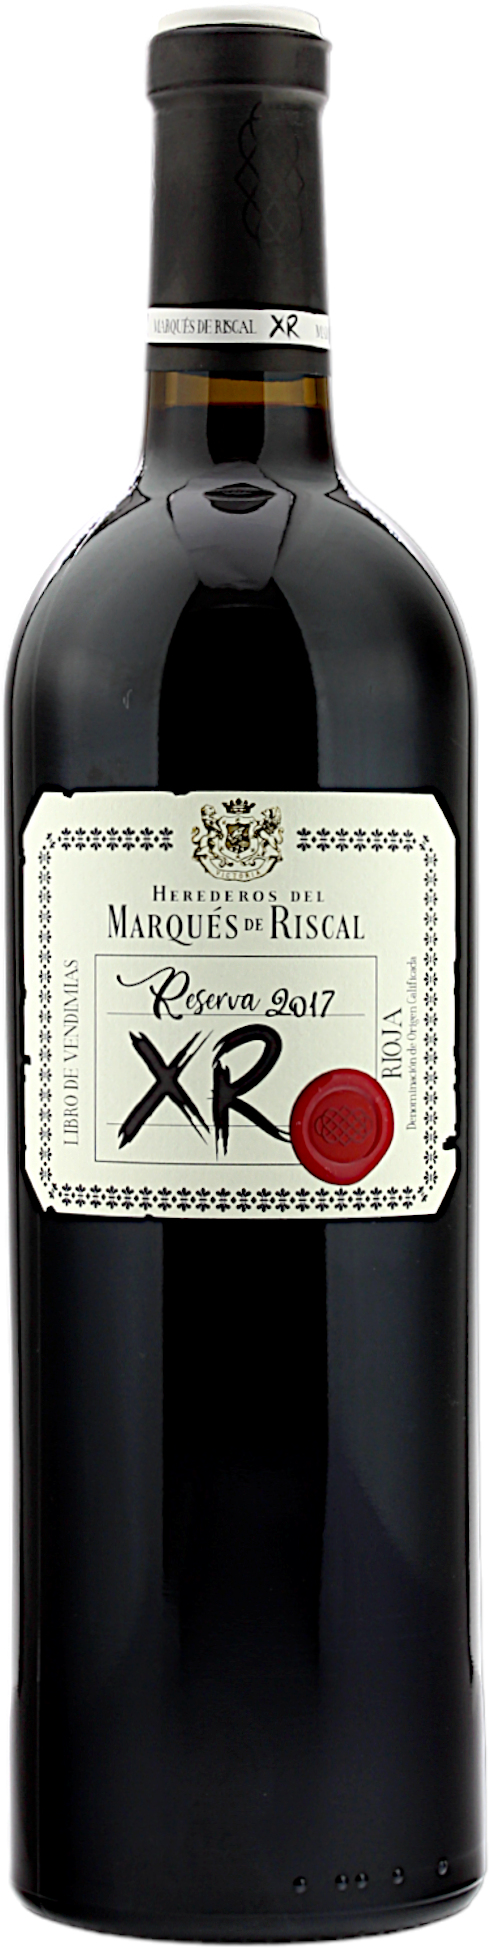 Marqués de Riscal Reserva 2017 XR La DOC Rioja